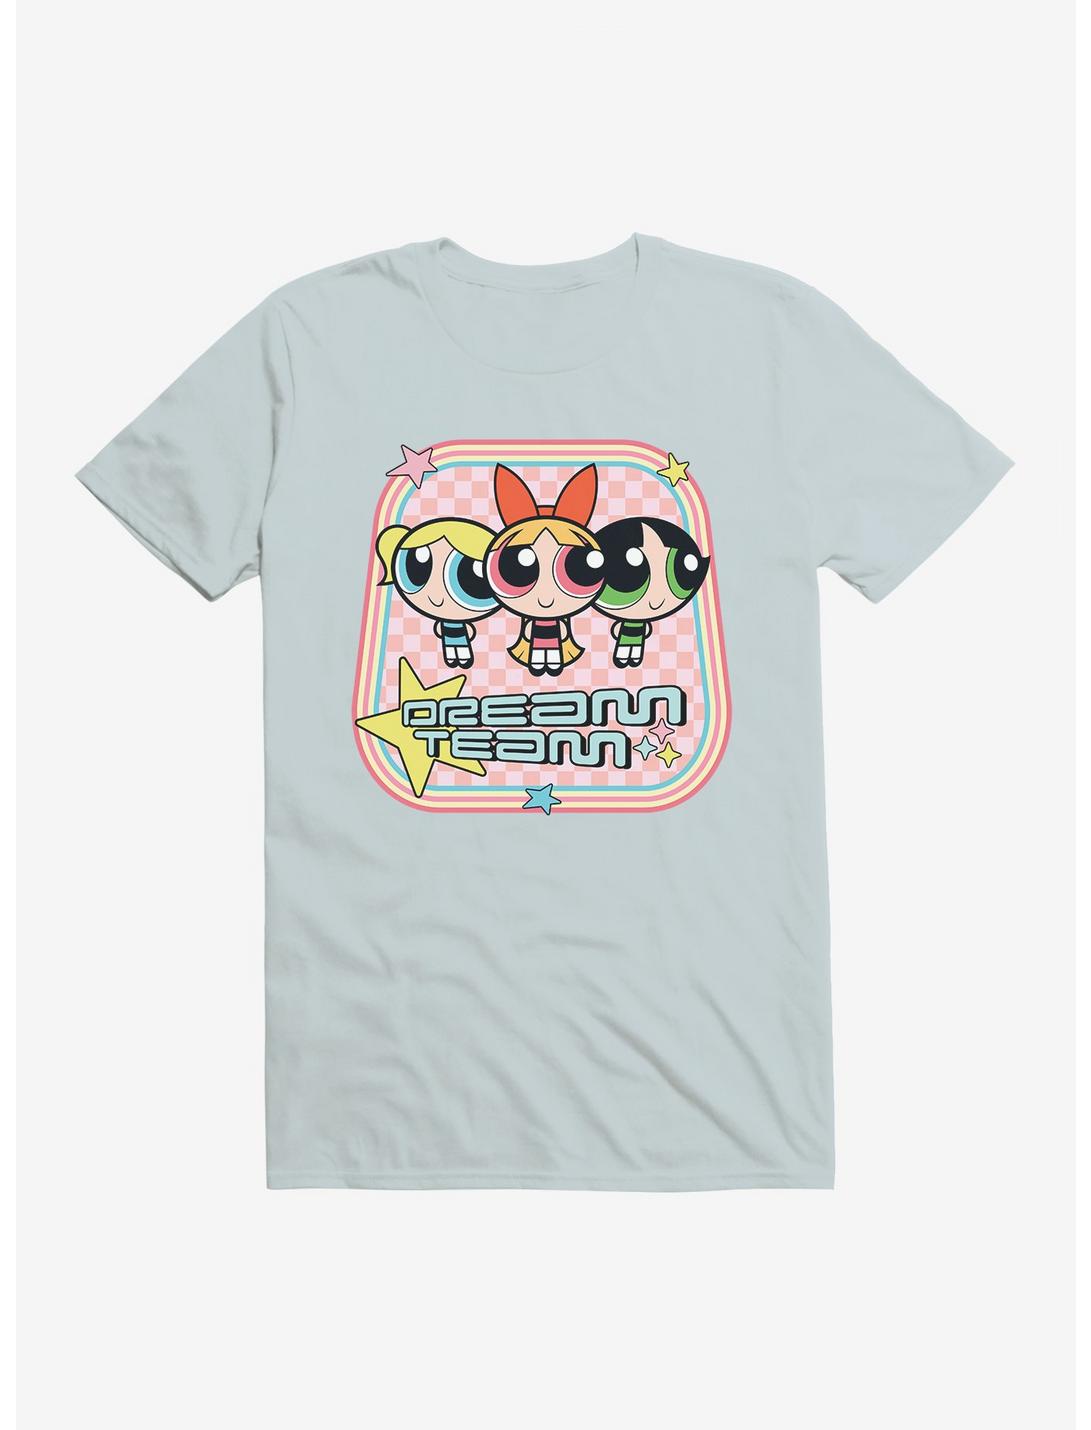 Powerpuff Dream Team T-Shirt, , hi-res